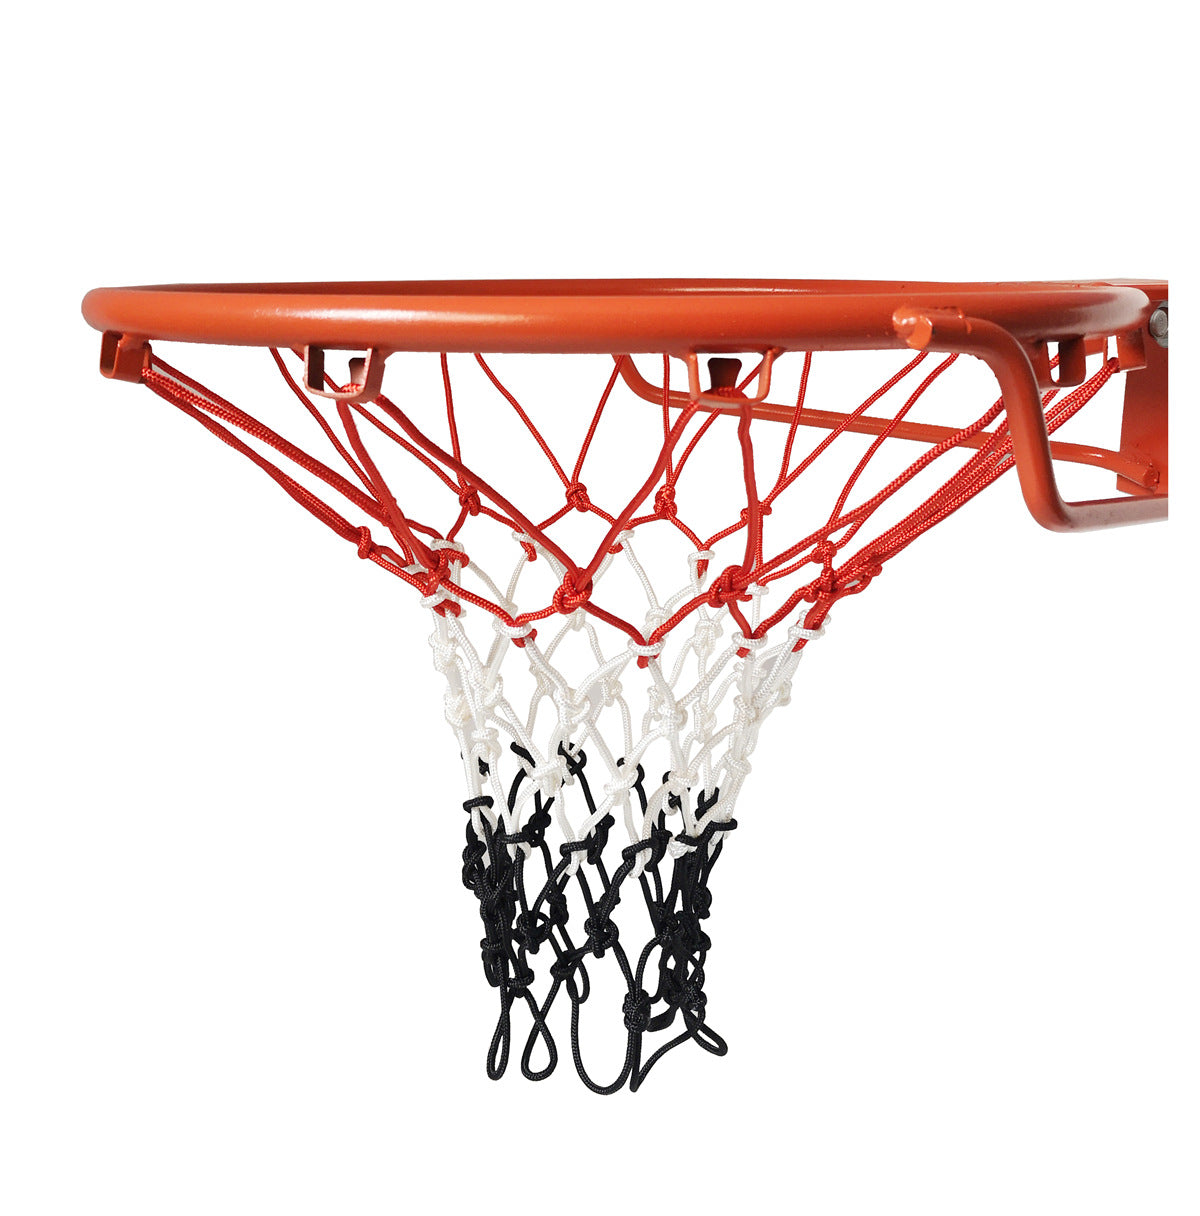 Basketball net - TryKid